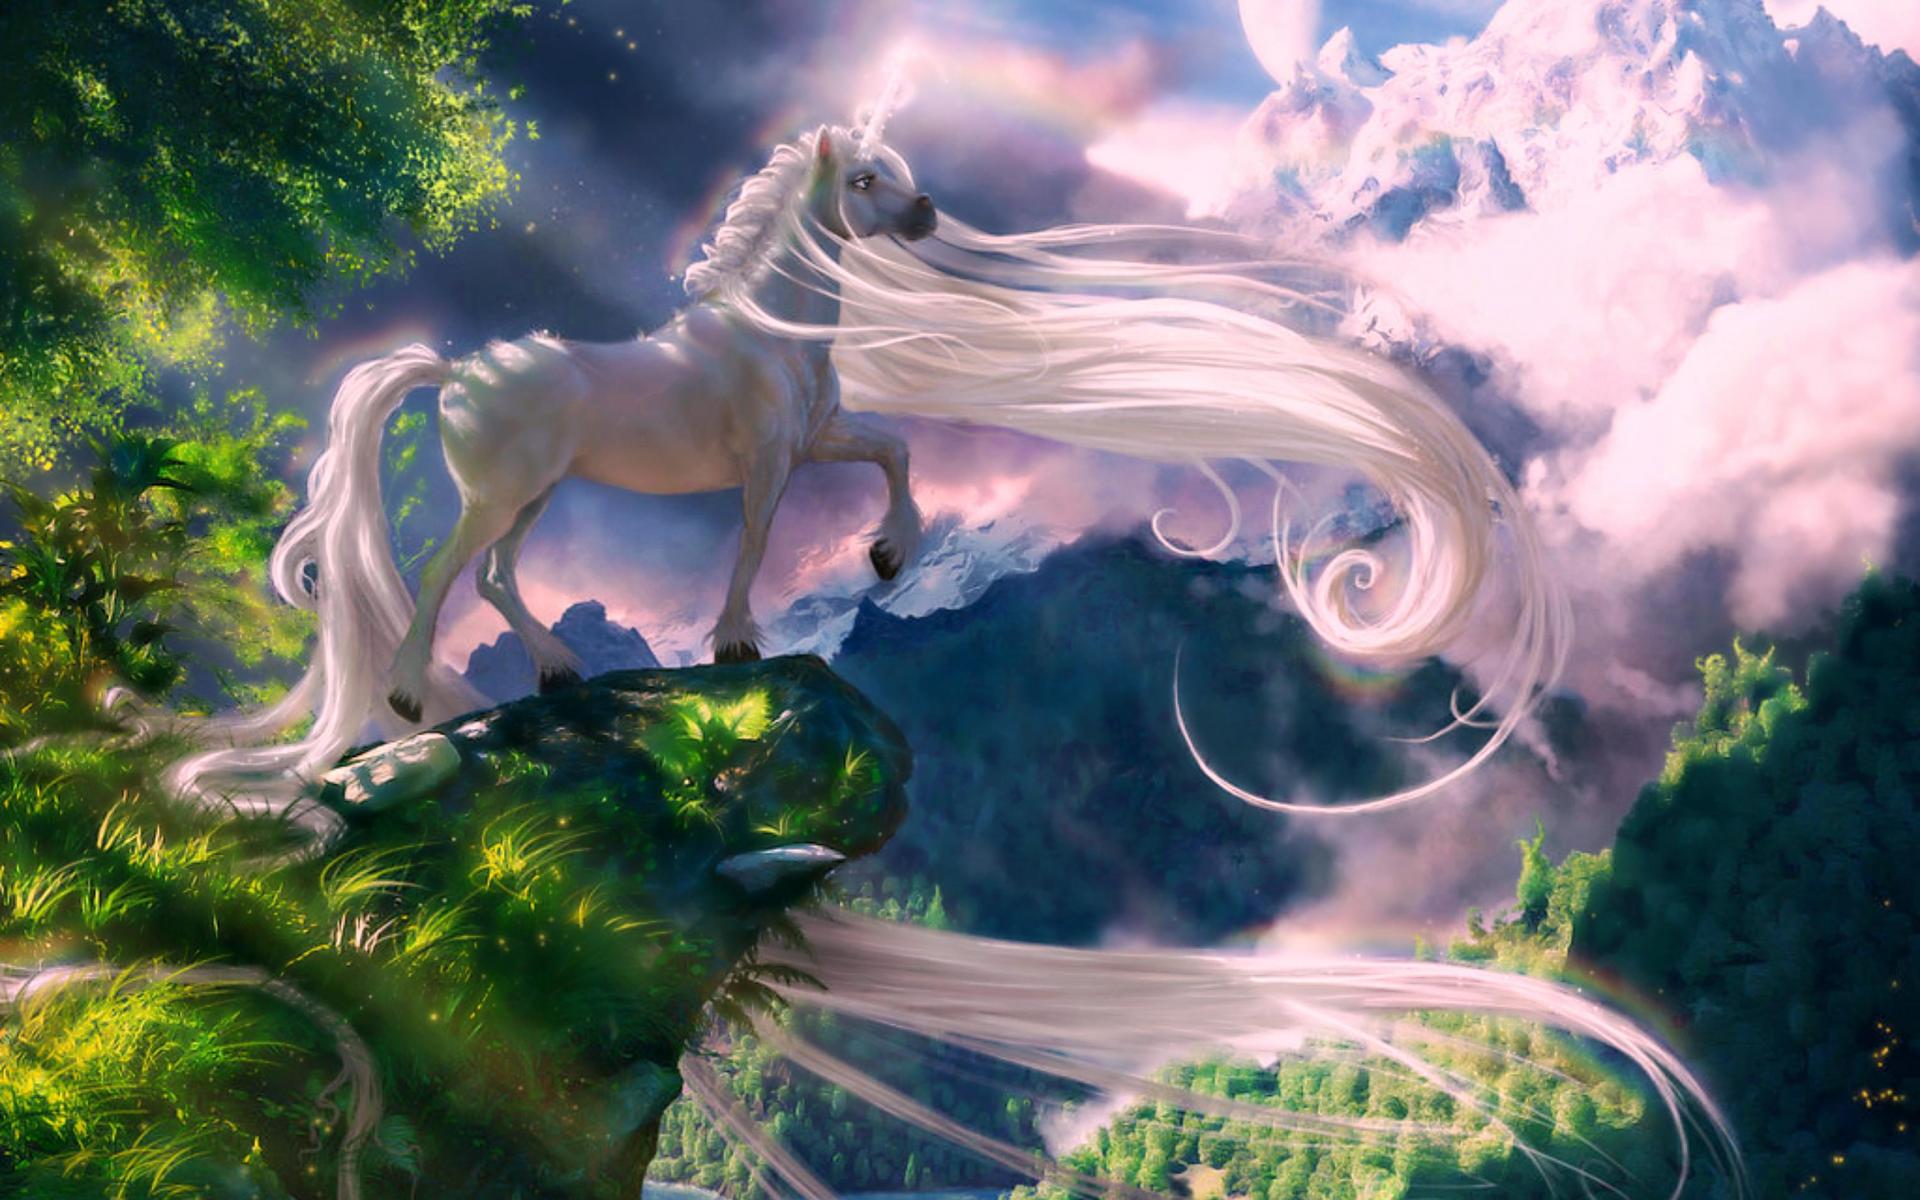 fondos de pantalla de unicornio hd,personaje de ficción,cg artwork,cielo,criatura mítica,unicornio